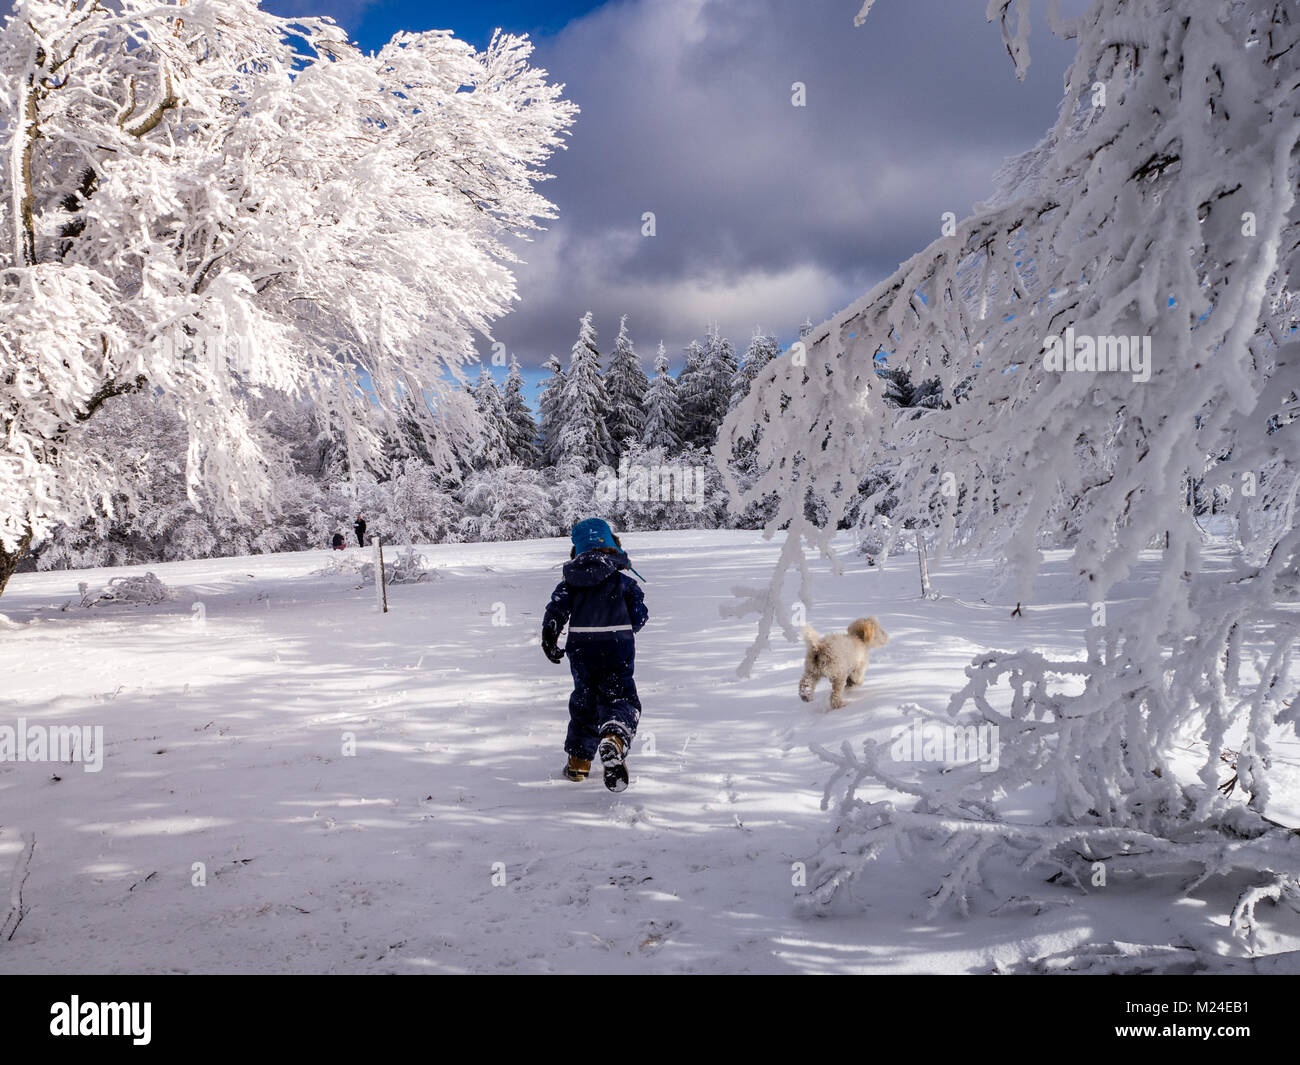 Un ragazzo e il cane che corre attraverso il bellissimo ricoperto di ghiaccio faggi nella foresta nera. Questo è in un posto chiamato "chauinsland' (guardare nella valle) Foto Stock